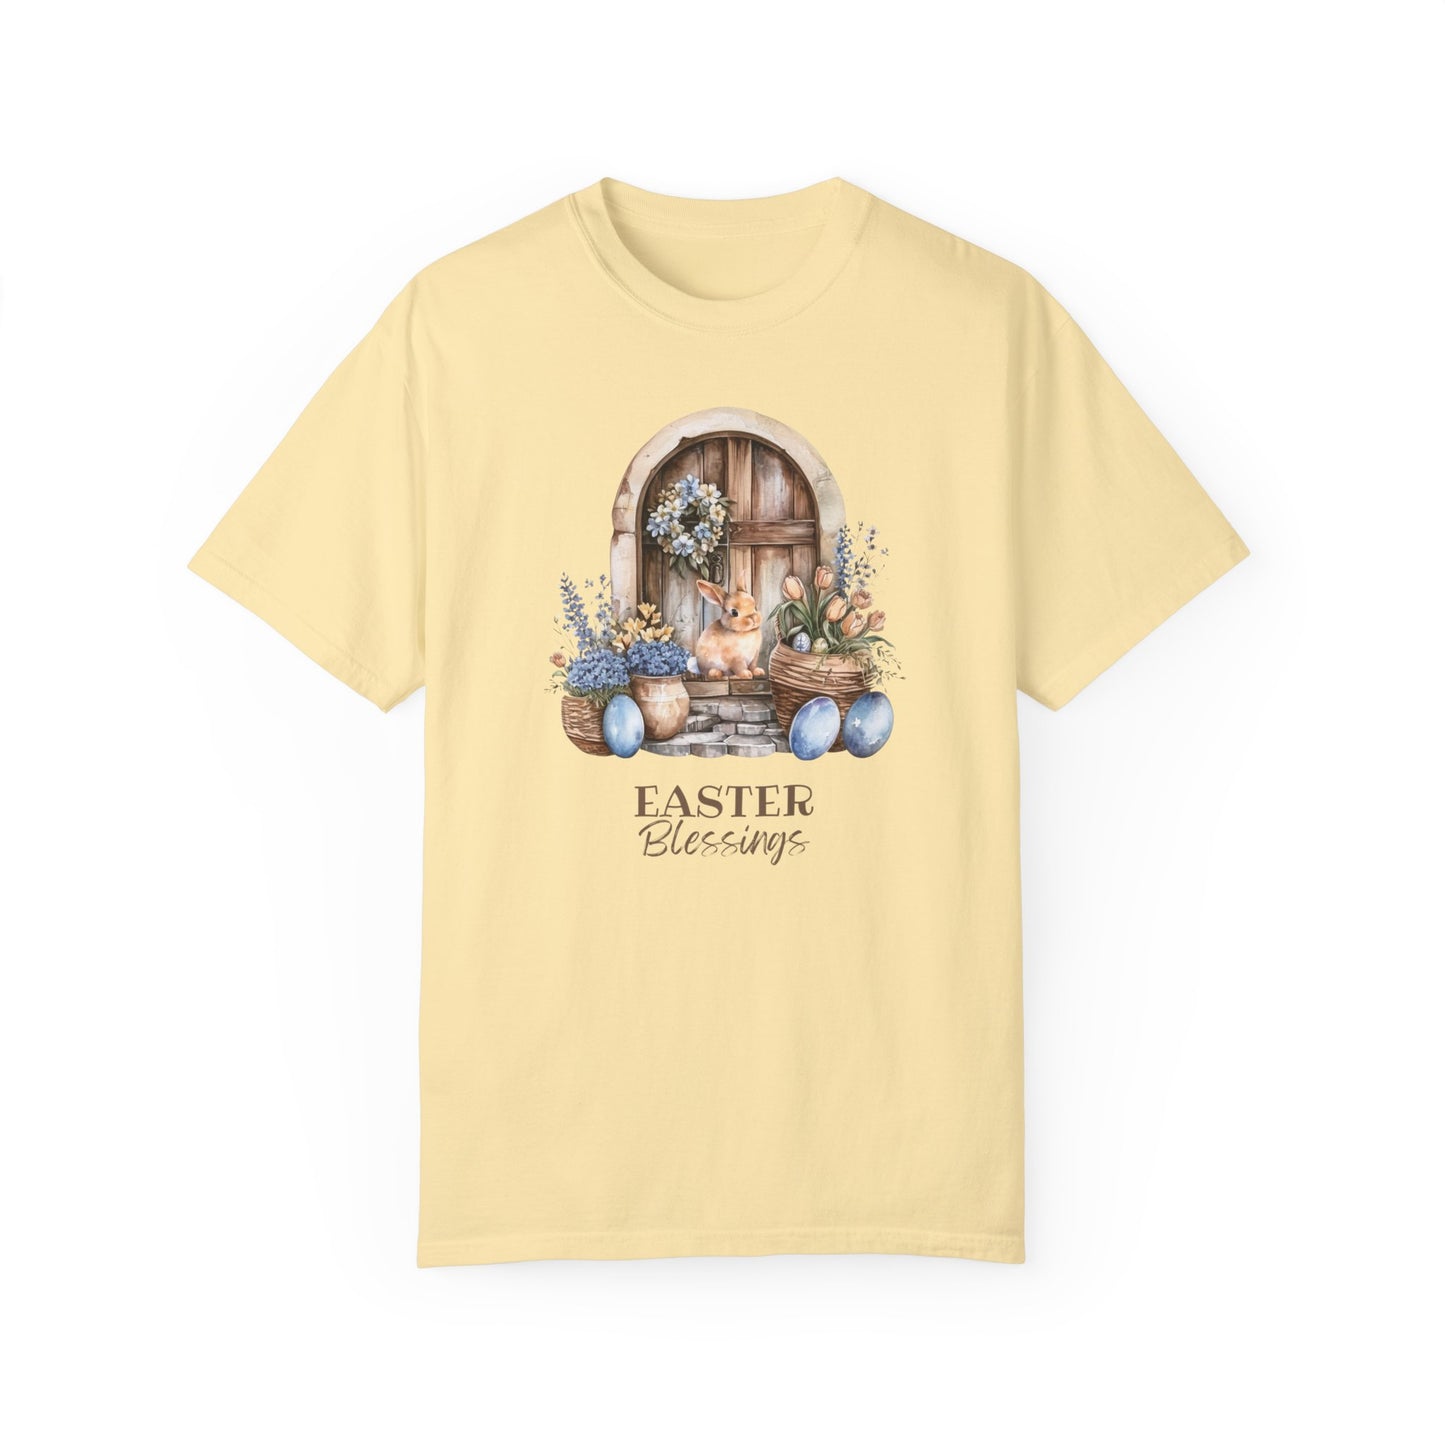 Easter Blessings T-shirt, Easter Eggs, Easter Rabbit, Christian T-Shirt, Inspirational T-Shirt, Easter Blessings Shirt, Easter Shirt